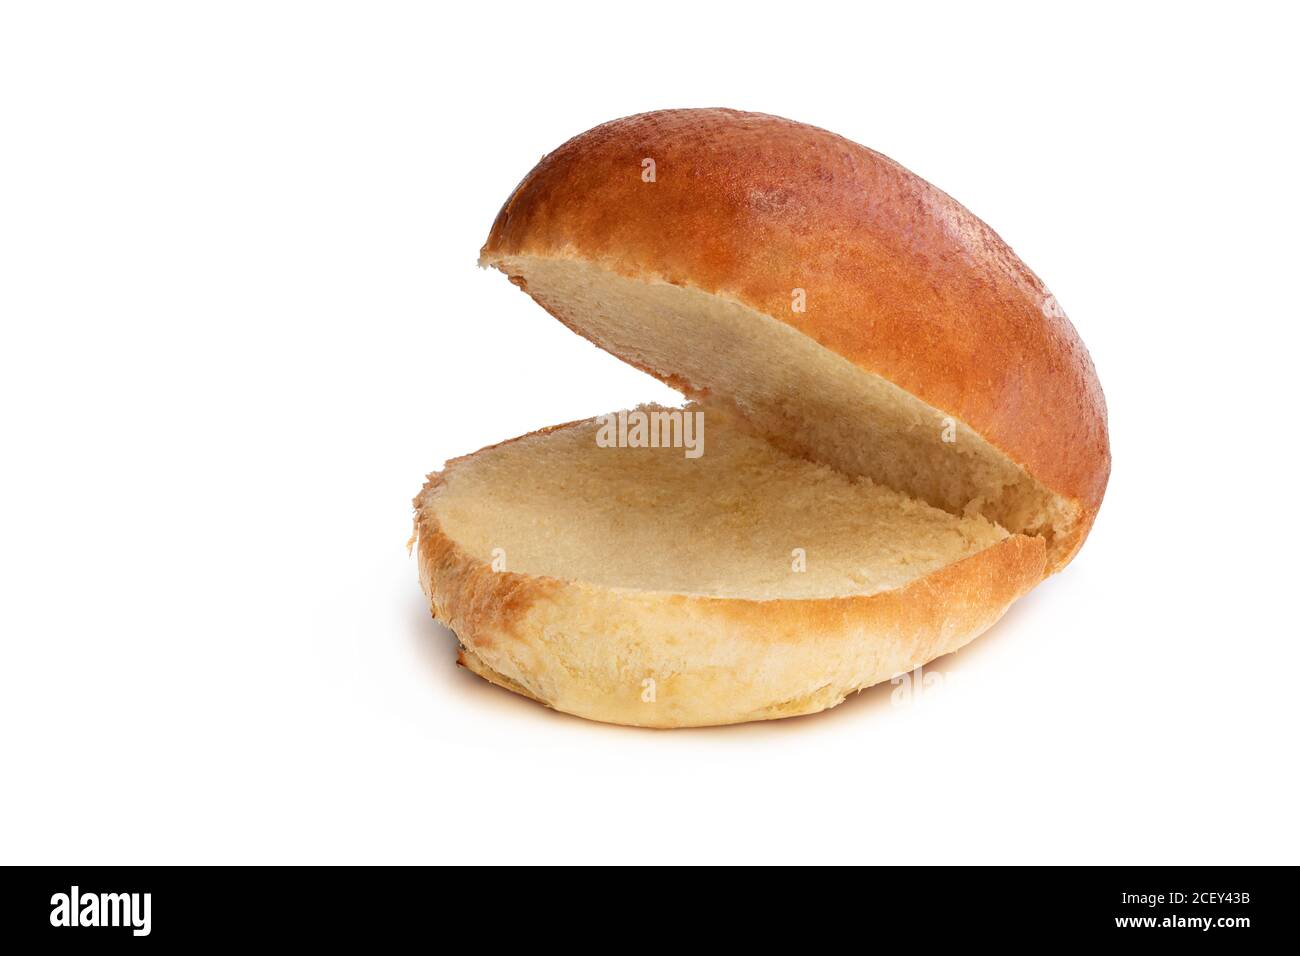 Plain burger bun hi-res stock photography and images - Alamy